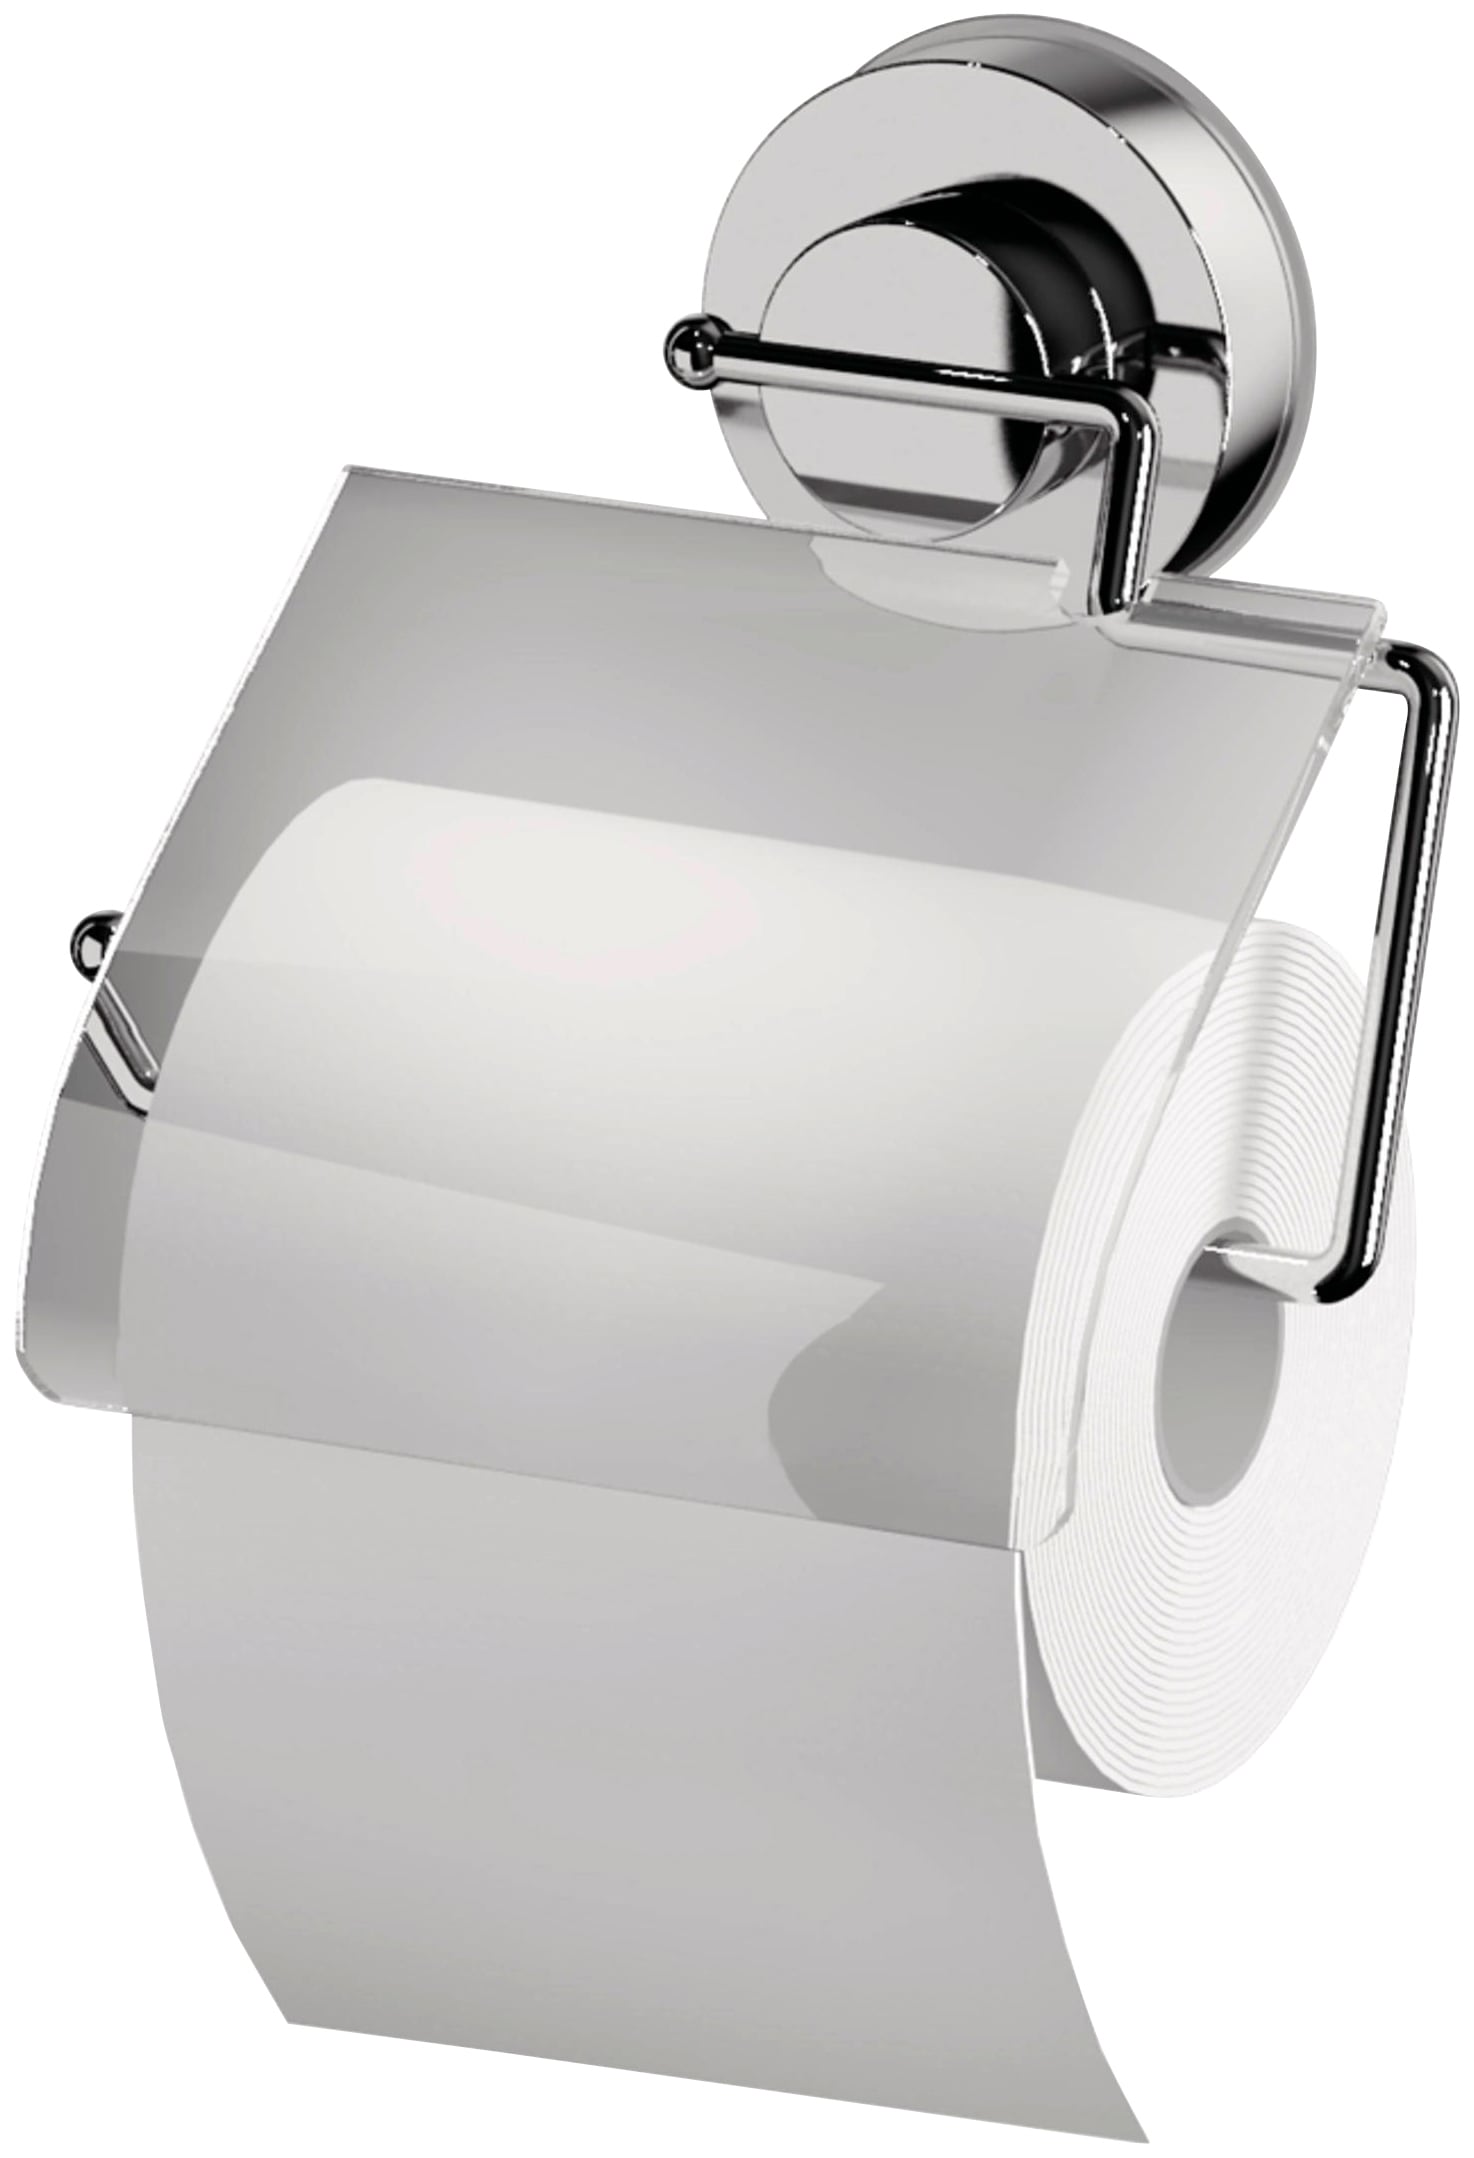 Ridder Toilettenpapierhalter, mit Saugvorrichtung 3 | Garantie mit Jahren XXL online kaufen